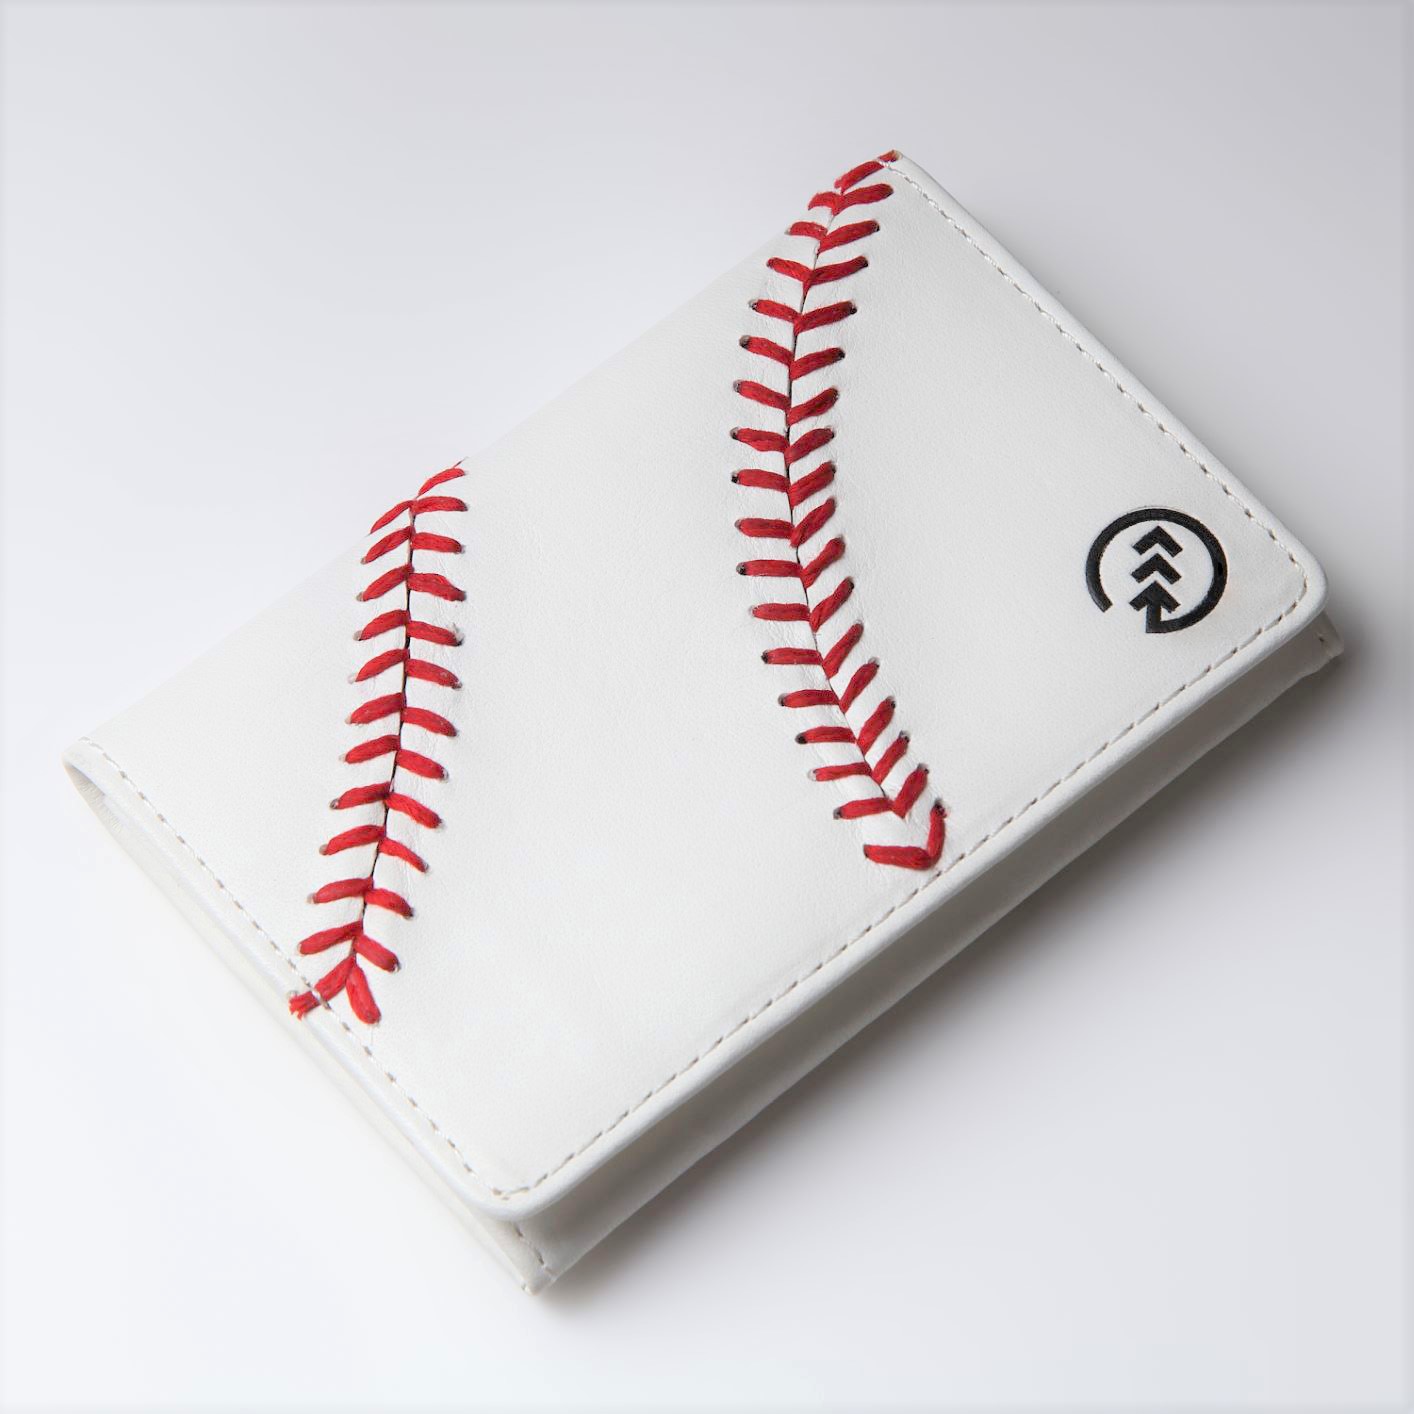 硬式野球ボールの魅力 赤い縫い目を生かした日常雑貨ブランドが登場 株式会社一光ユニテクスのプレスリリース